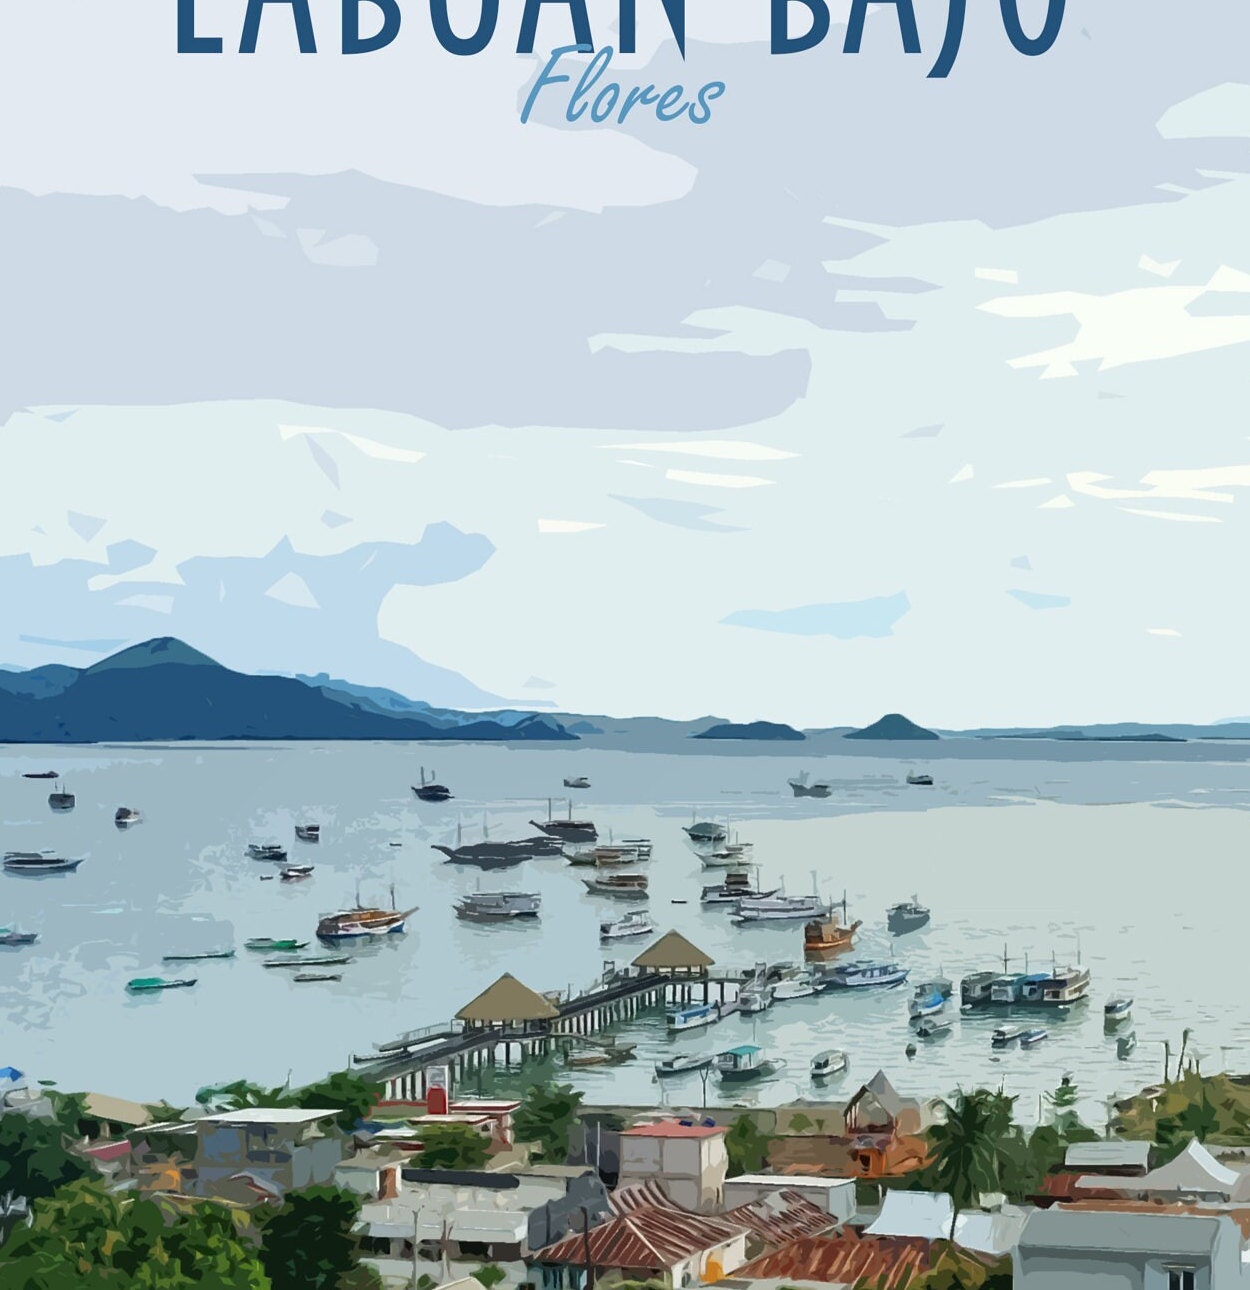 Labuan Bajo Travel Poster